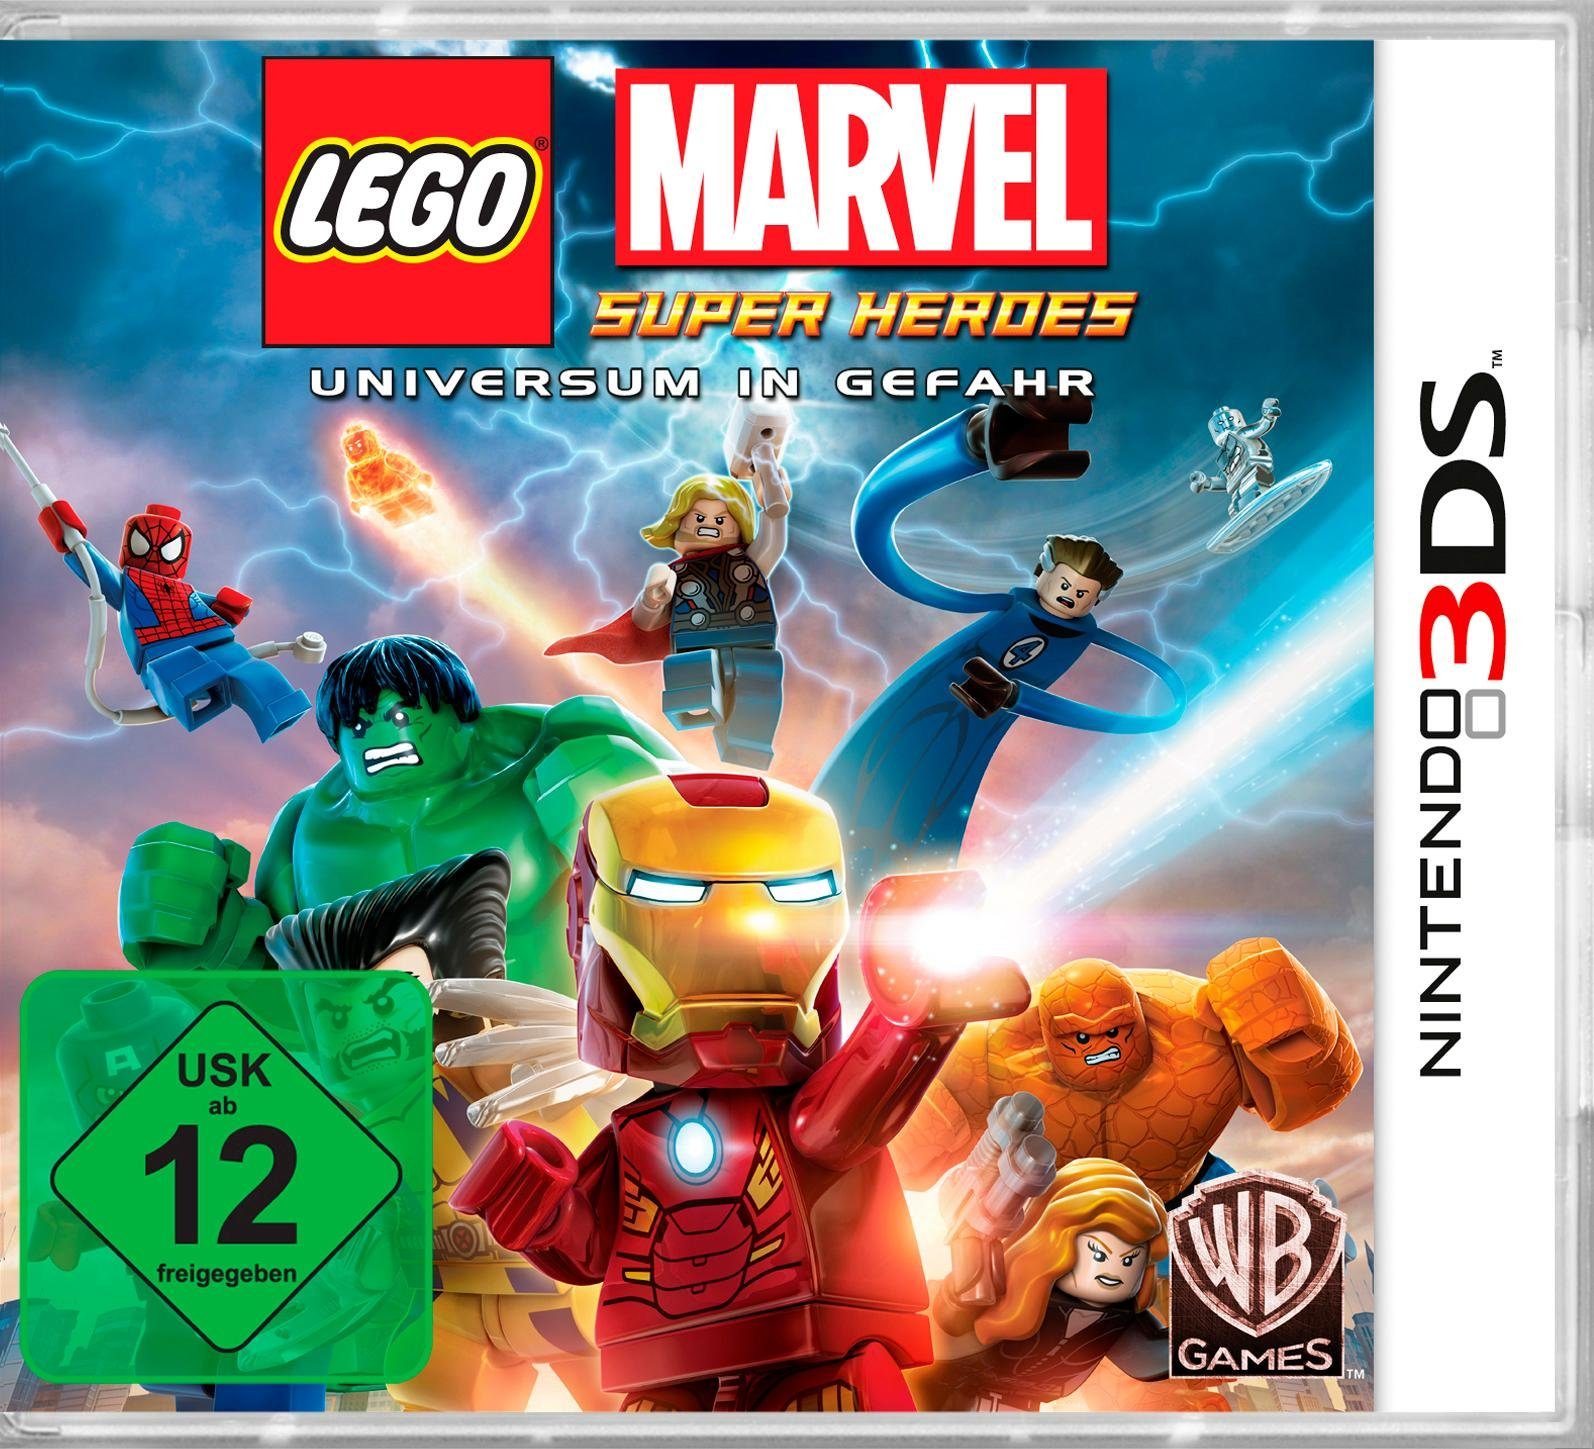 Marvel Games Warner Pyramide Software Super Heroes Nintendo 3DS, Lego